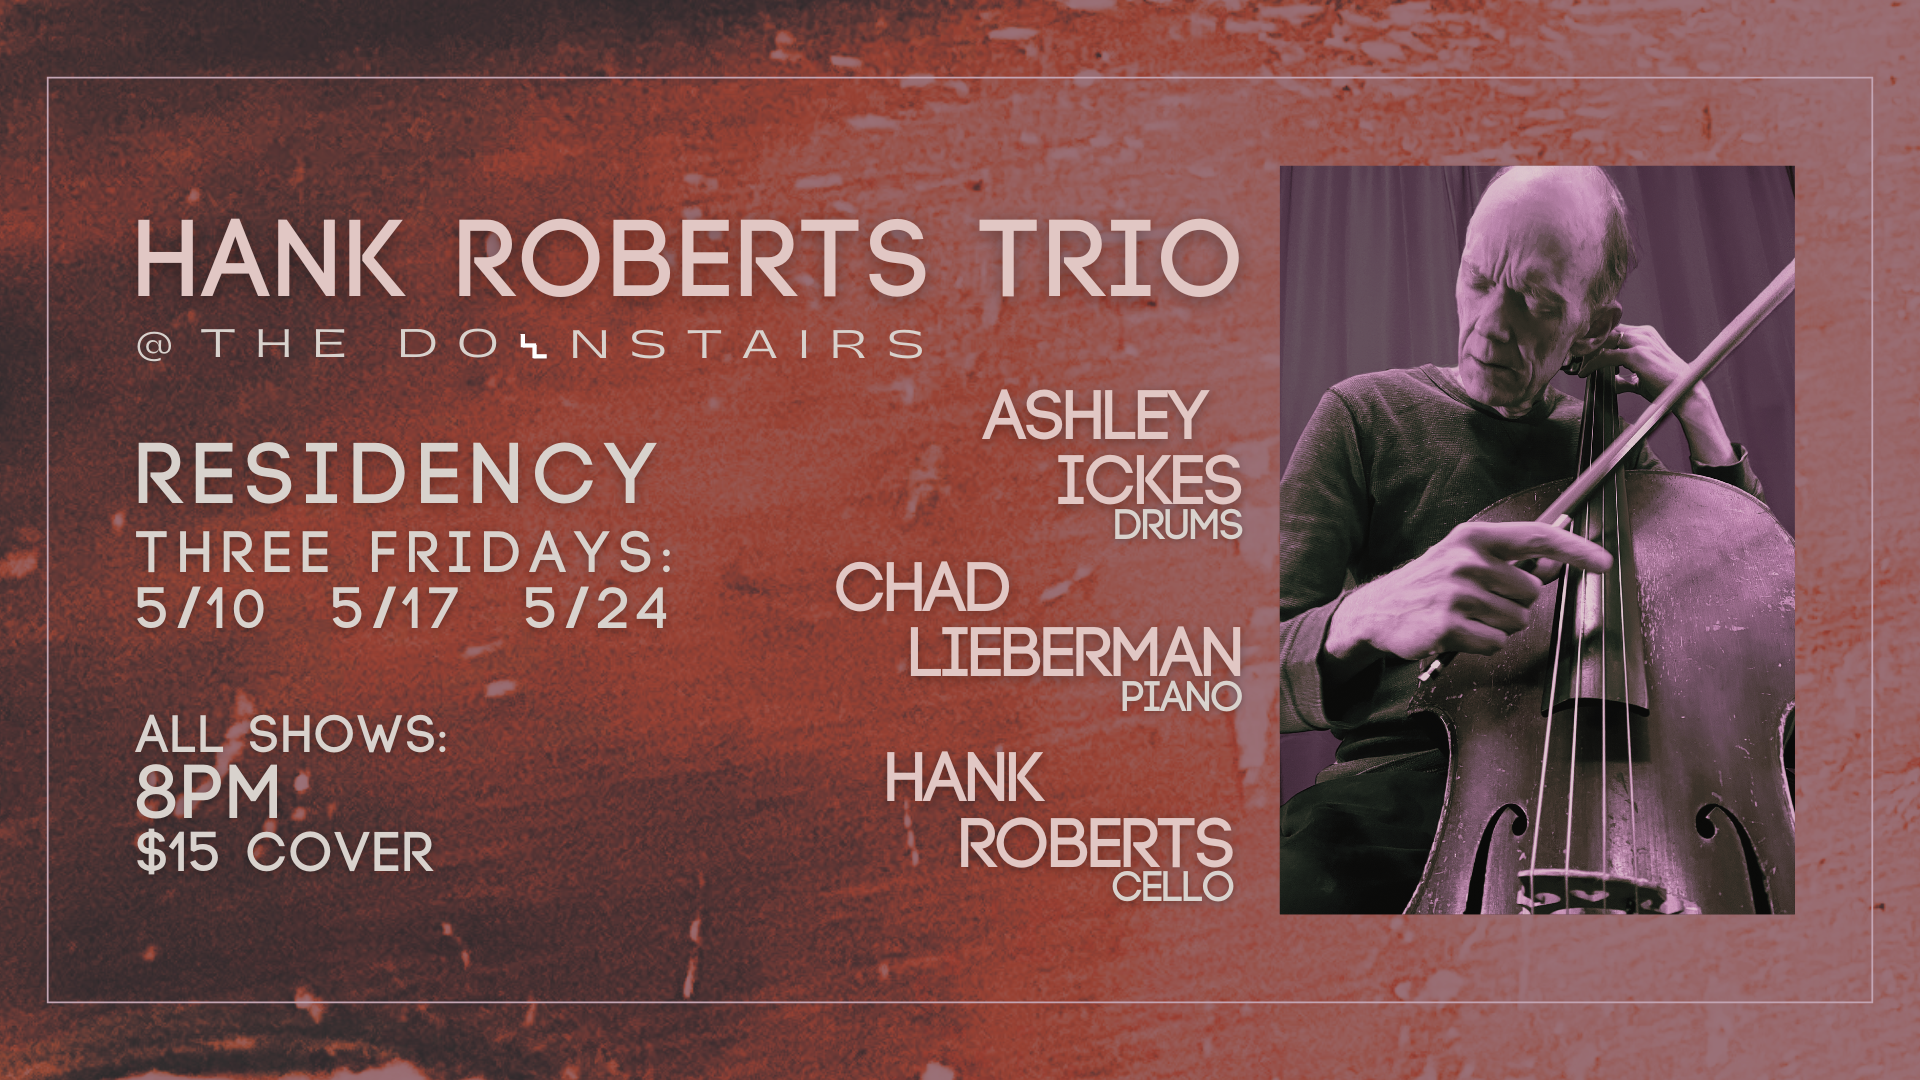 Hank Roberts Trio Residency